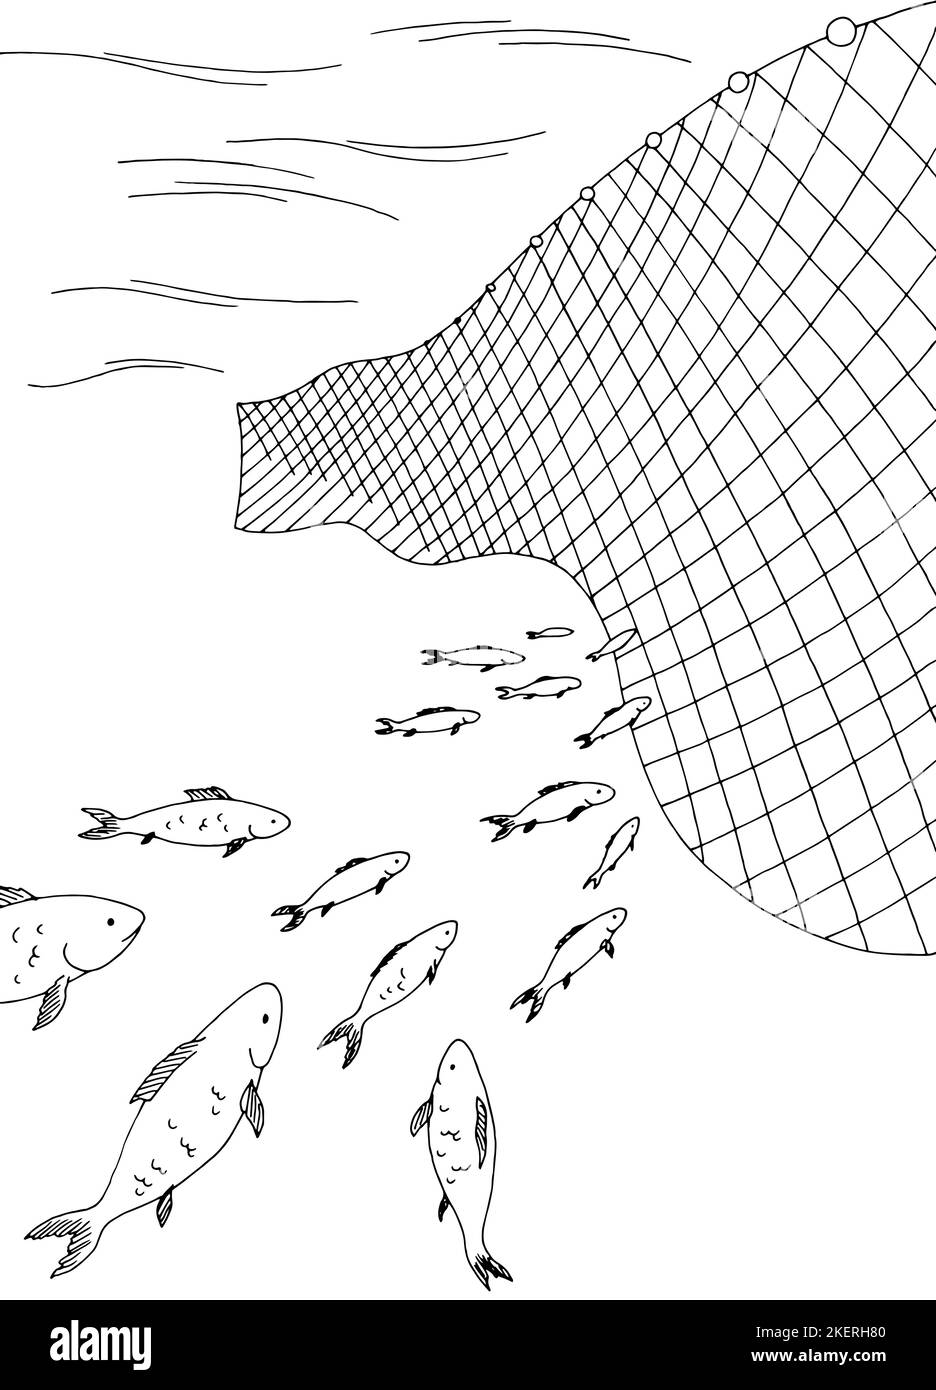 École de poissons se déplaçant dans le filet de pêche graphique mer noir blanc vertical esquisse vecteur d'illustration Illustration de Vecteur